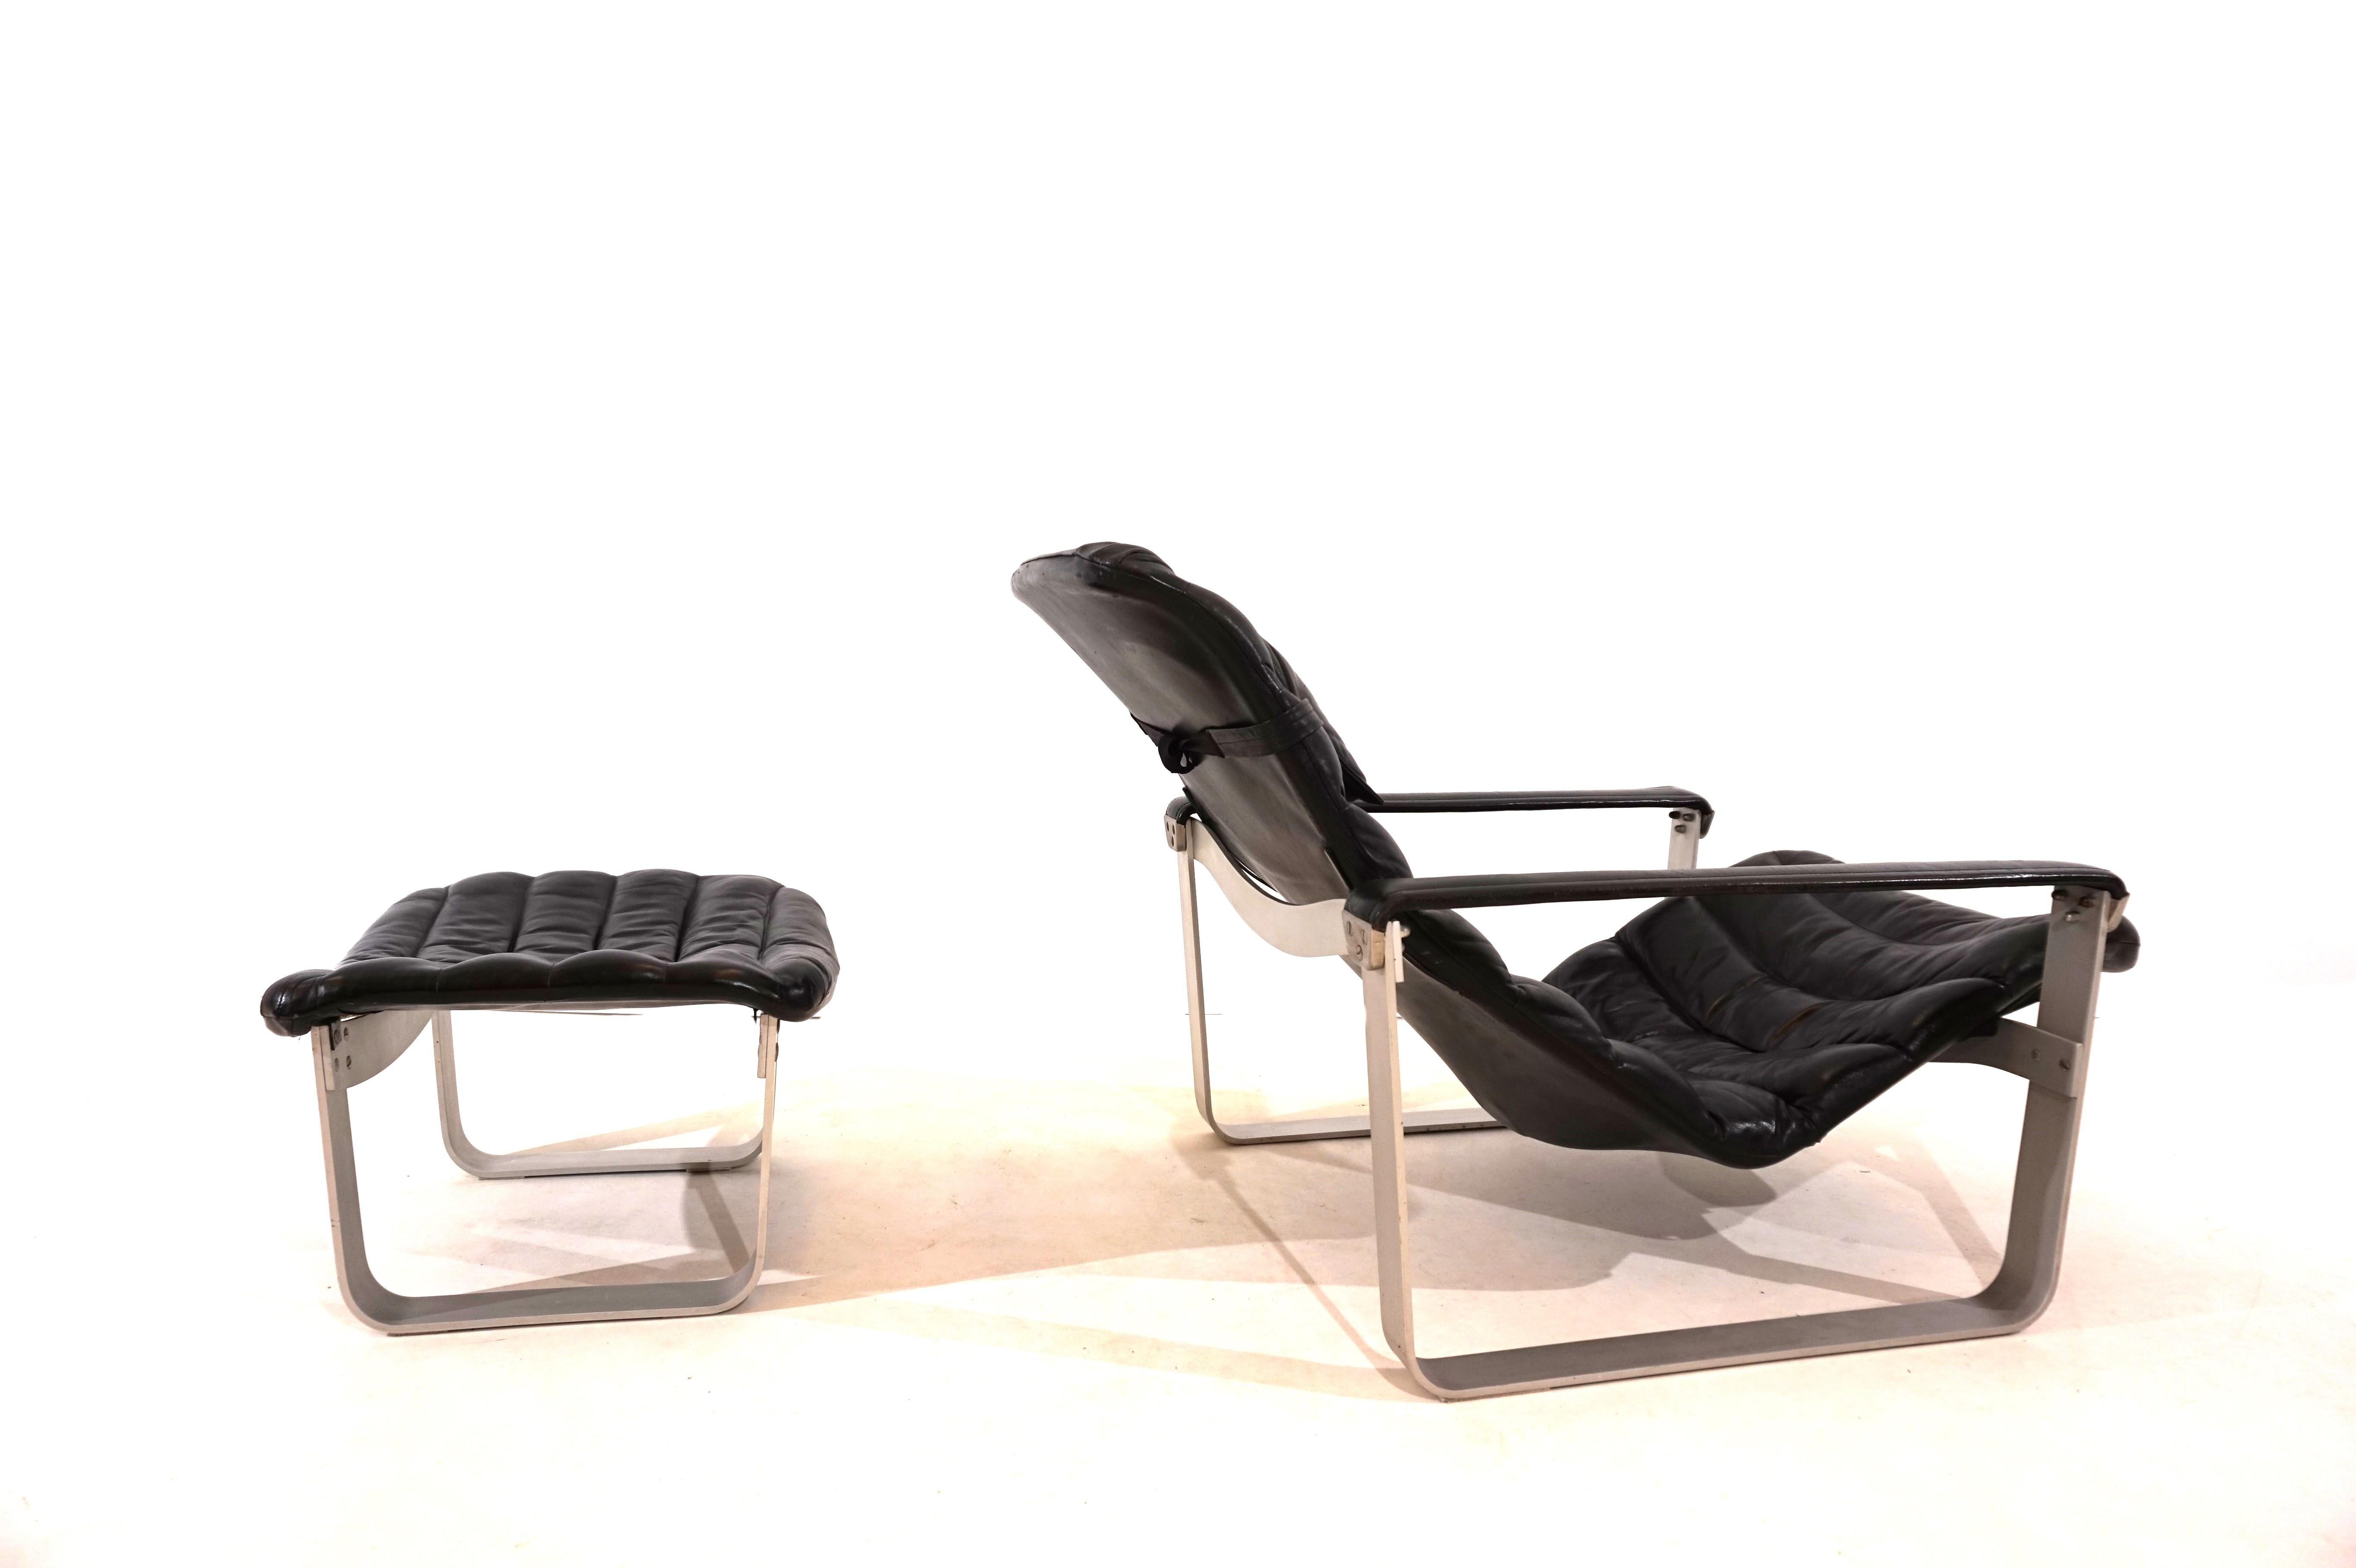 Le fauteuil Asko Pulkka en cuir noir est, comme l'ottoman, en très bon état. Le cuir est souple et intact, les coutures sont toutes en bon état. L'assise du fauteuil repose sur un cadre en aluminium et est réglable de plusieurs façons. Le cadre